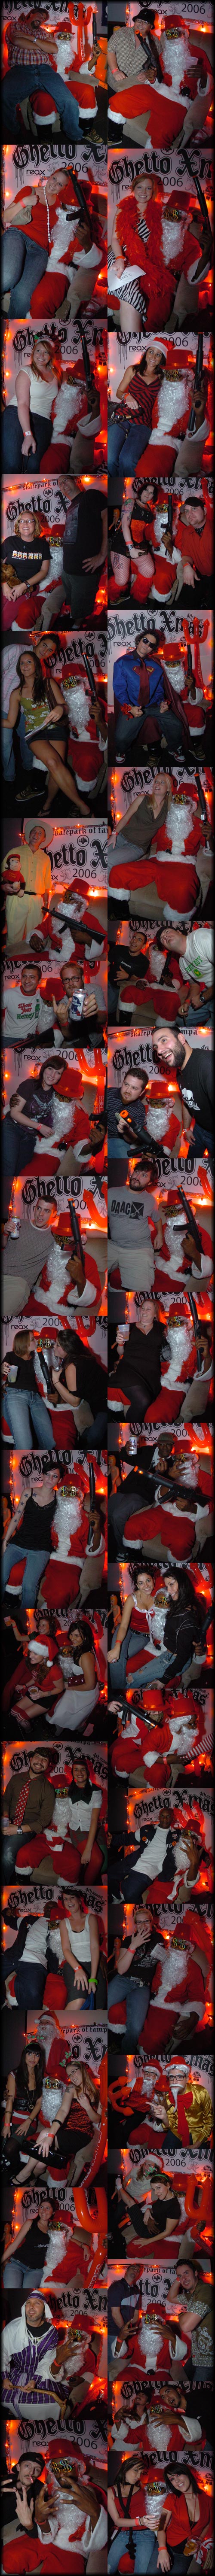 SPoT Ghetto Christmas Party 2006